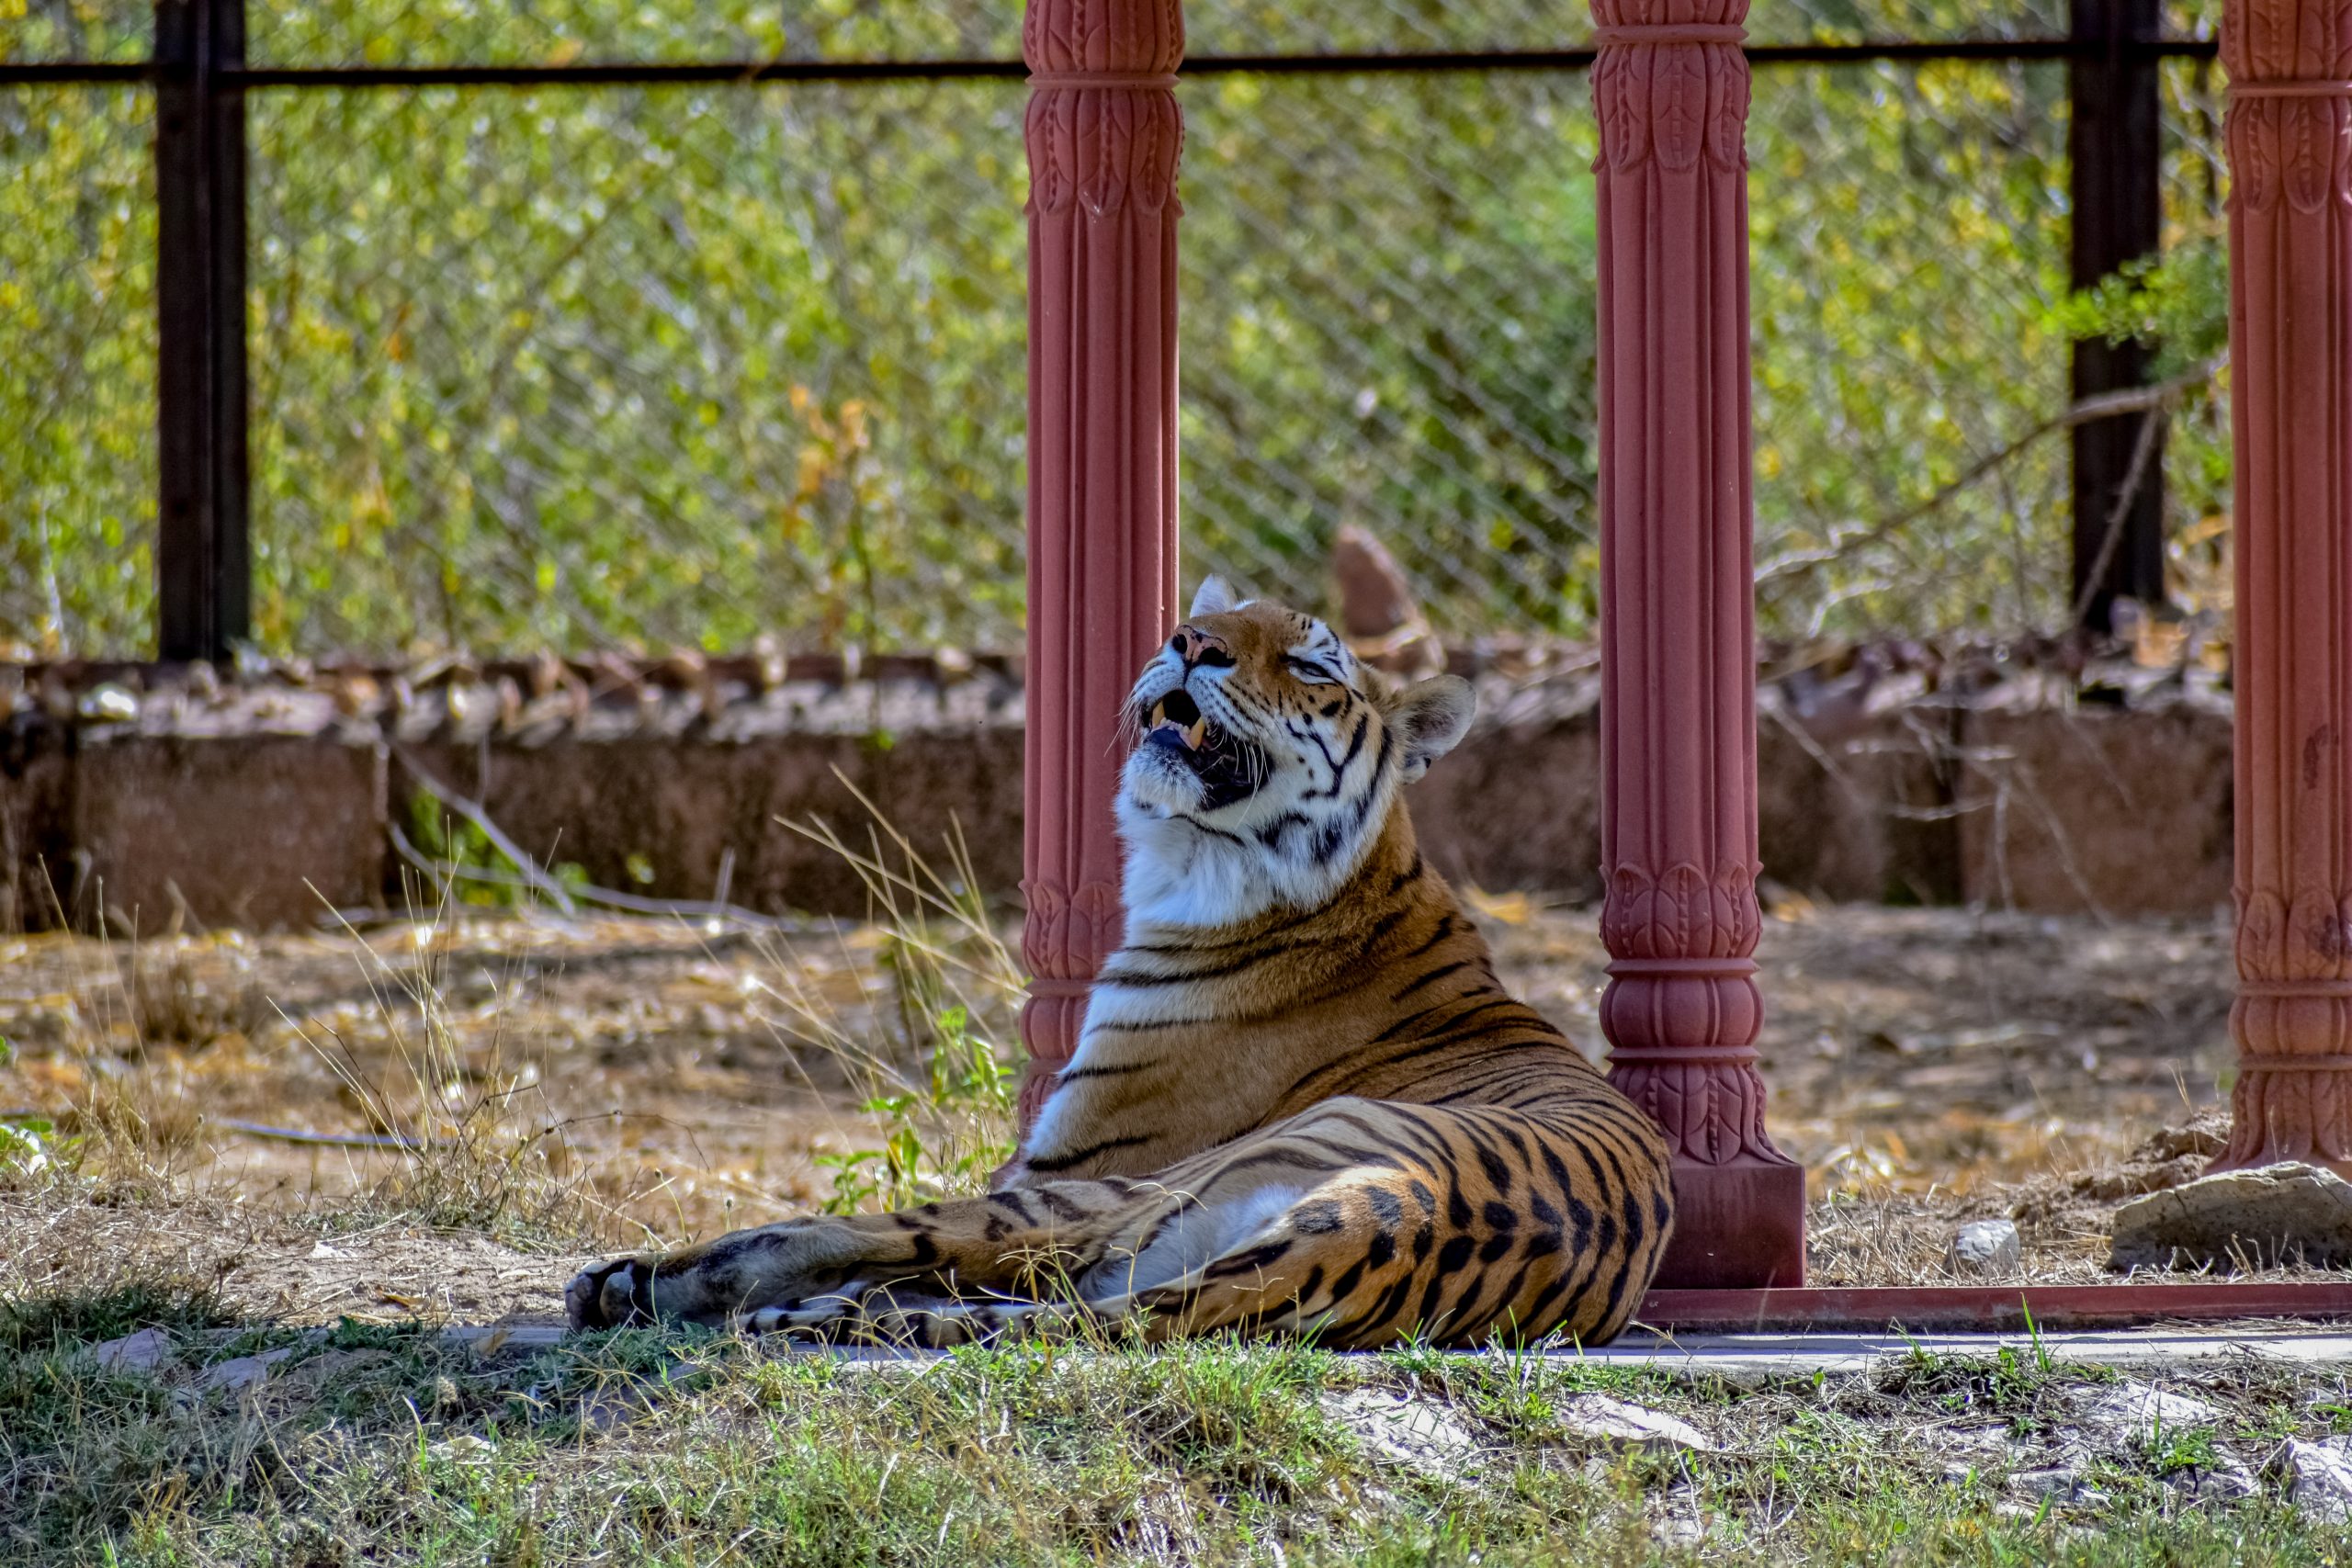 Tiger roaring